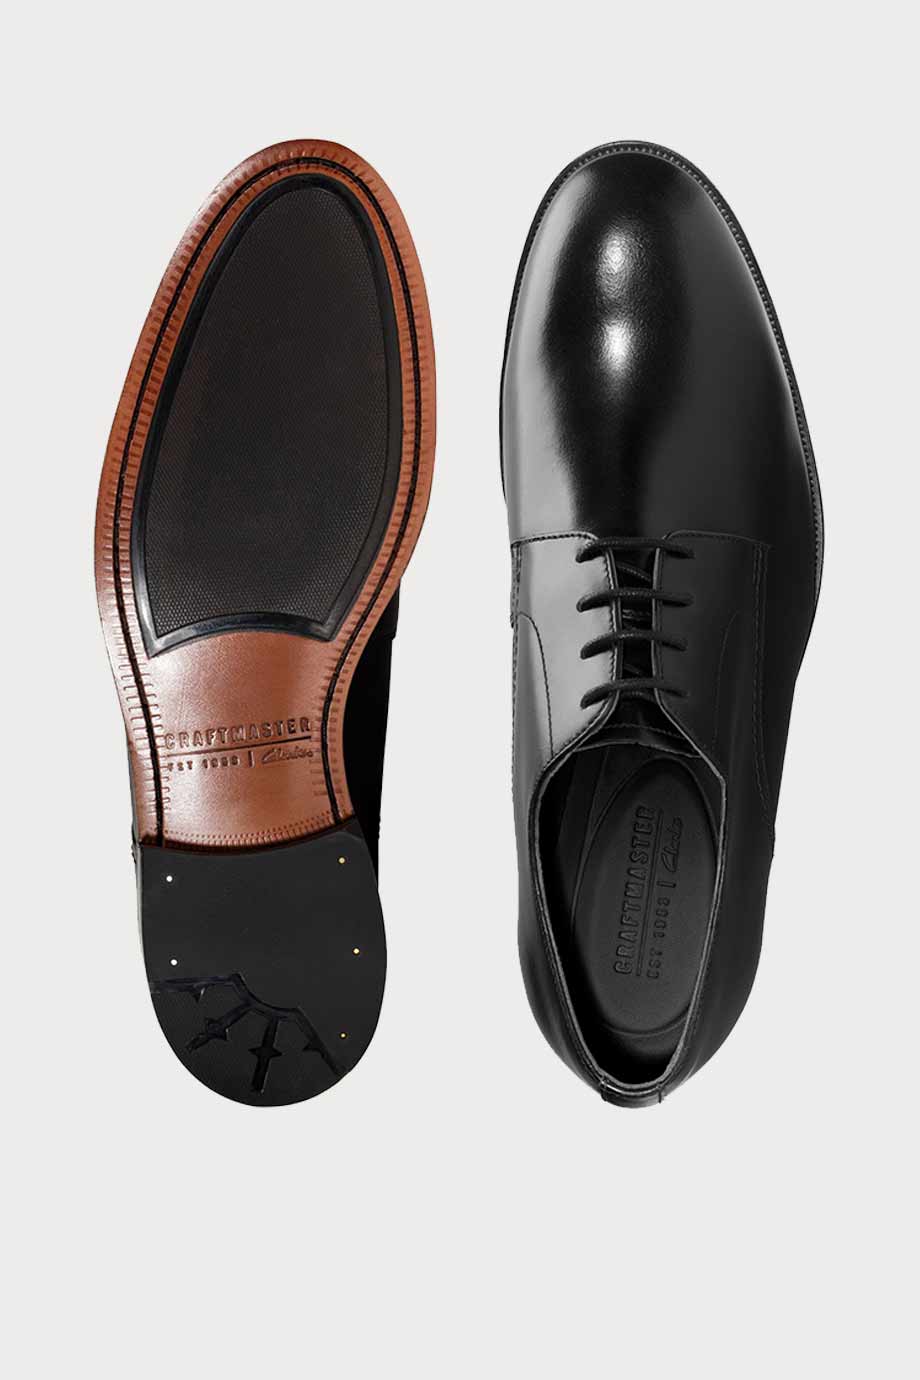 spiridoula metheniti shoes xalkida p oliver lace black leather clarks 7